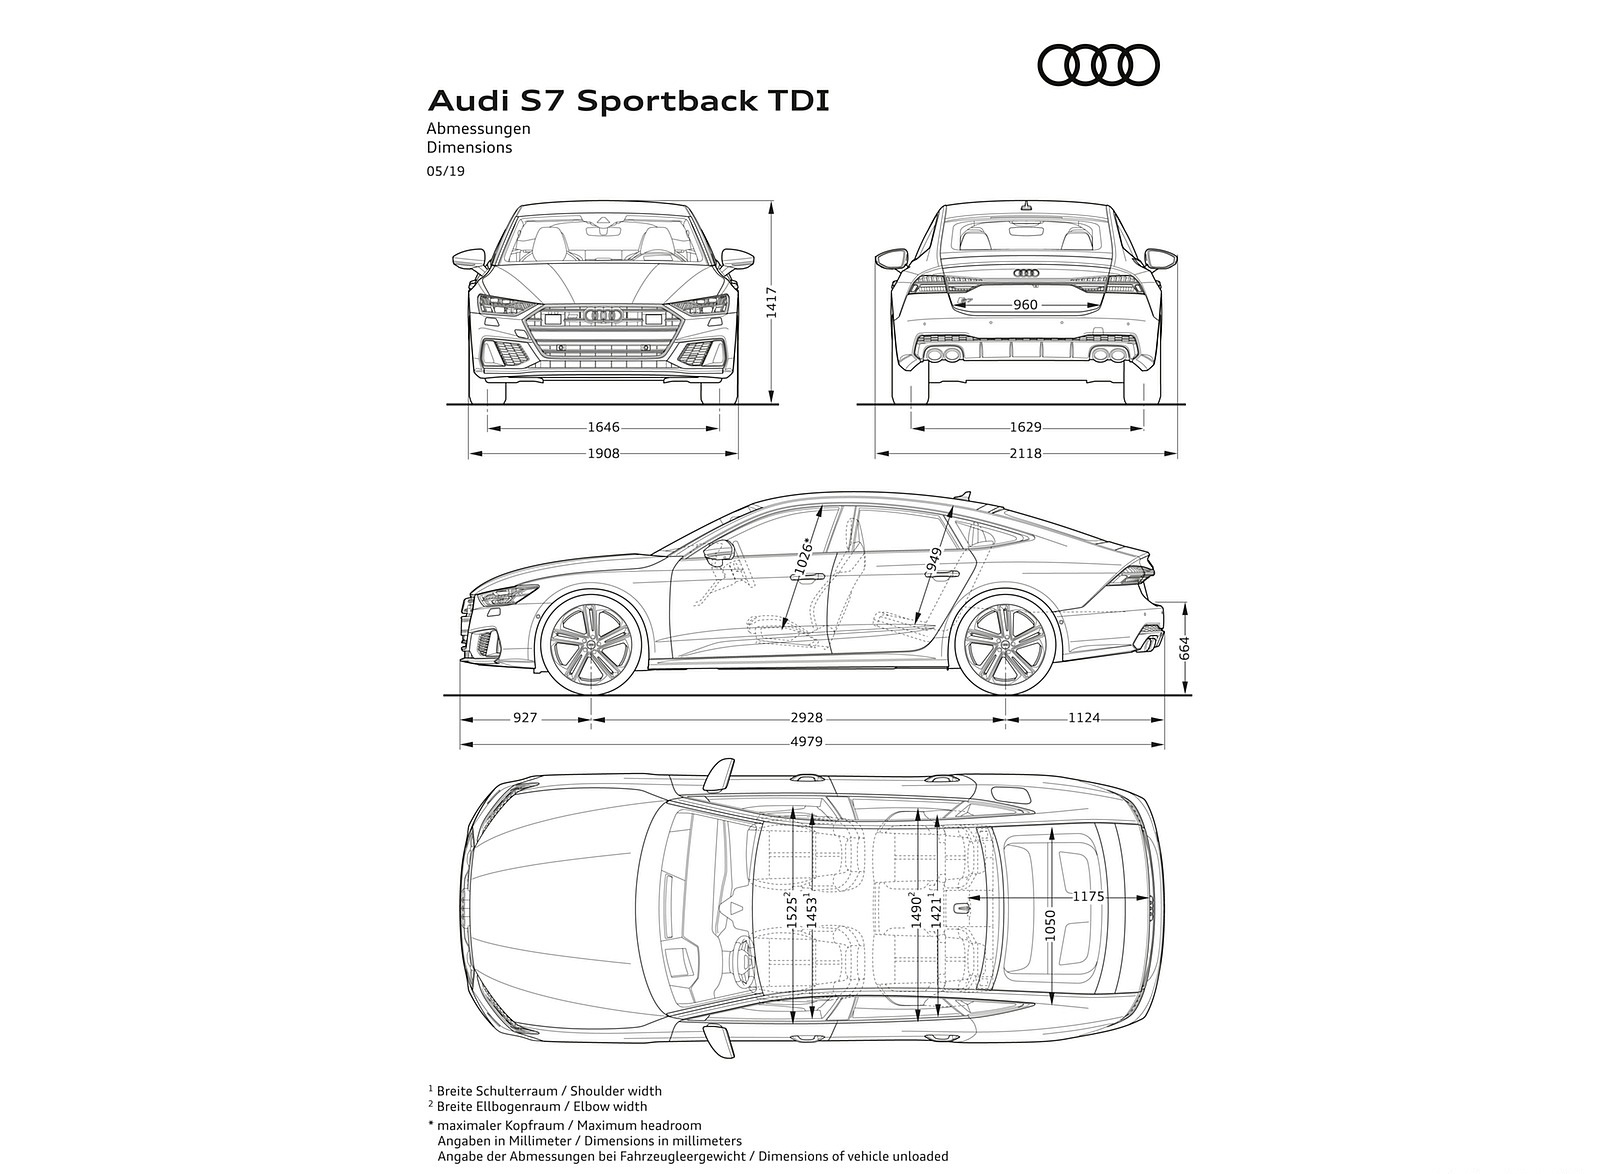 2020 Audi S7 Sportback TDI Dimensions Wallpapers #88 of 88